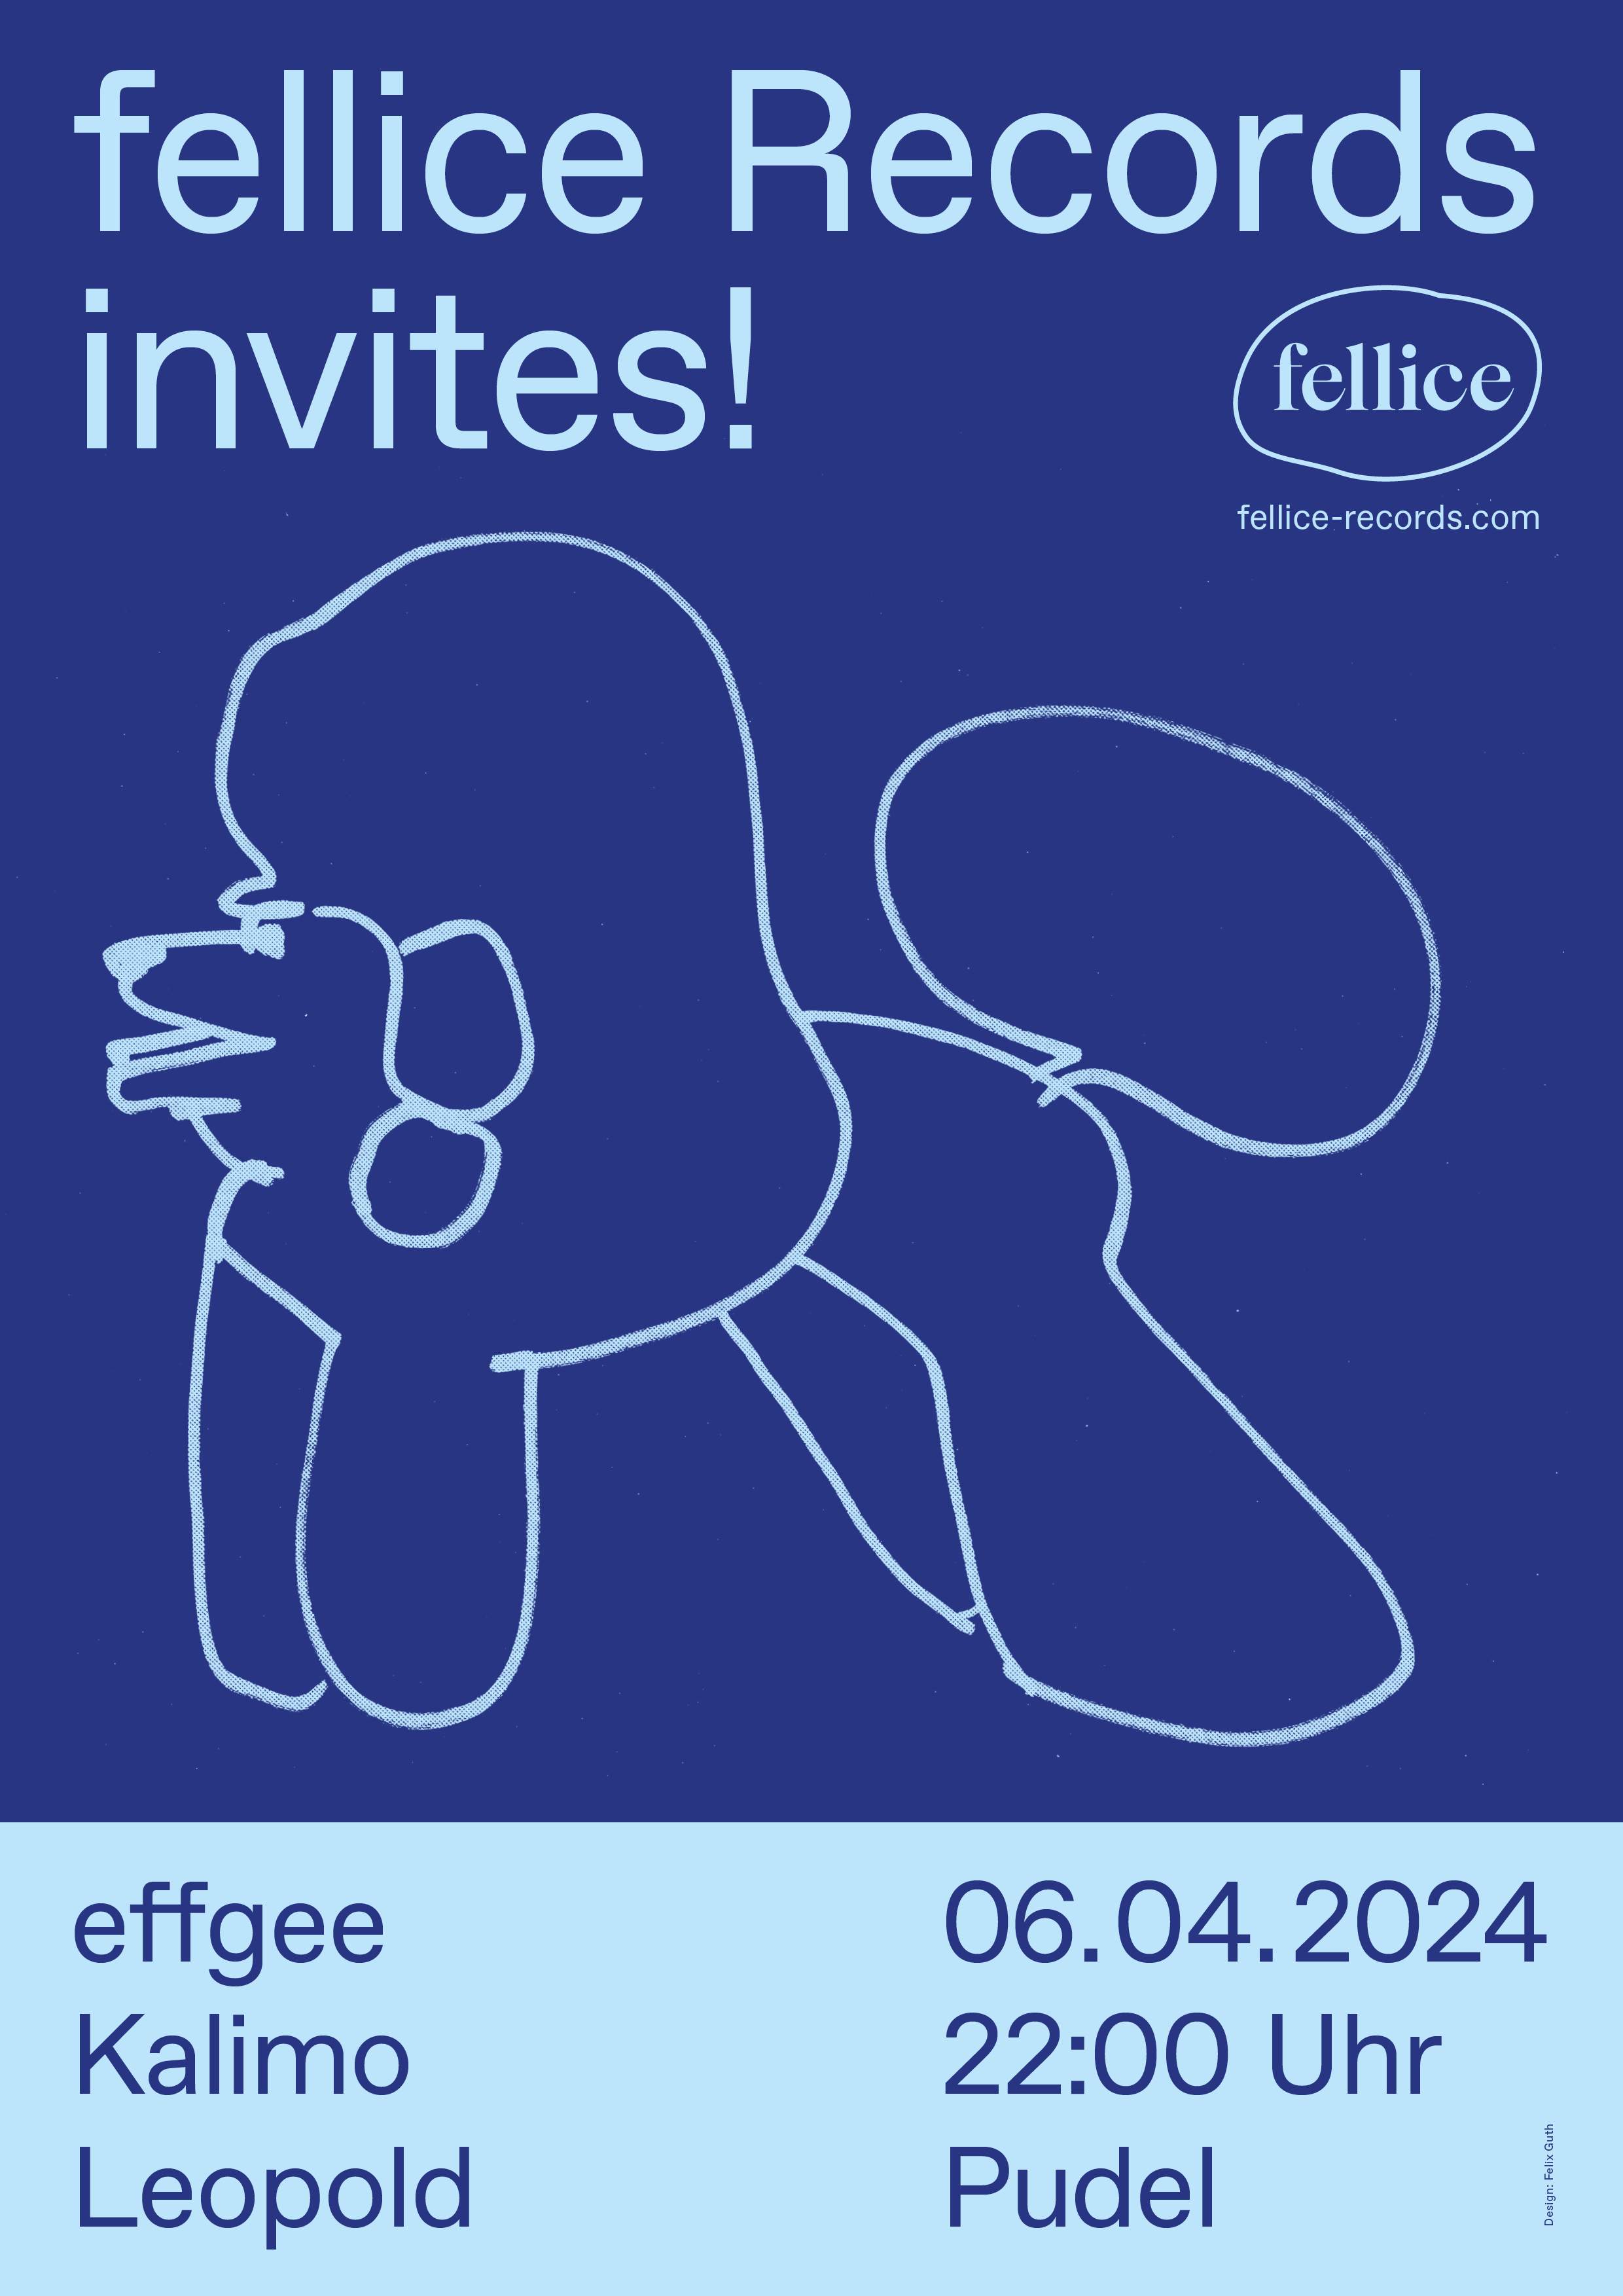 fellice Records invites - フライヤー表